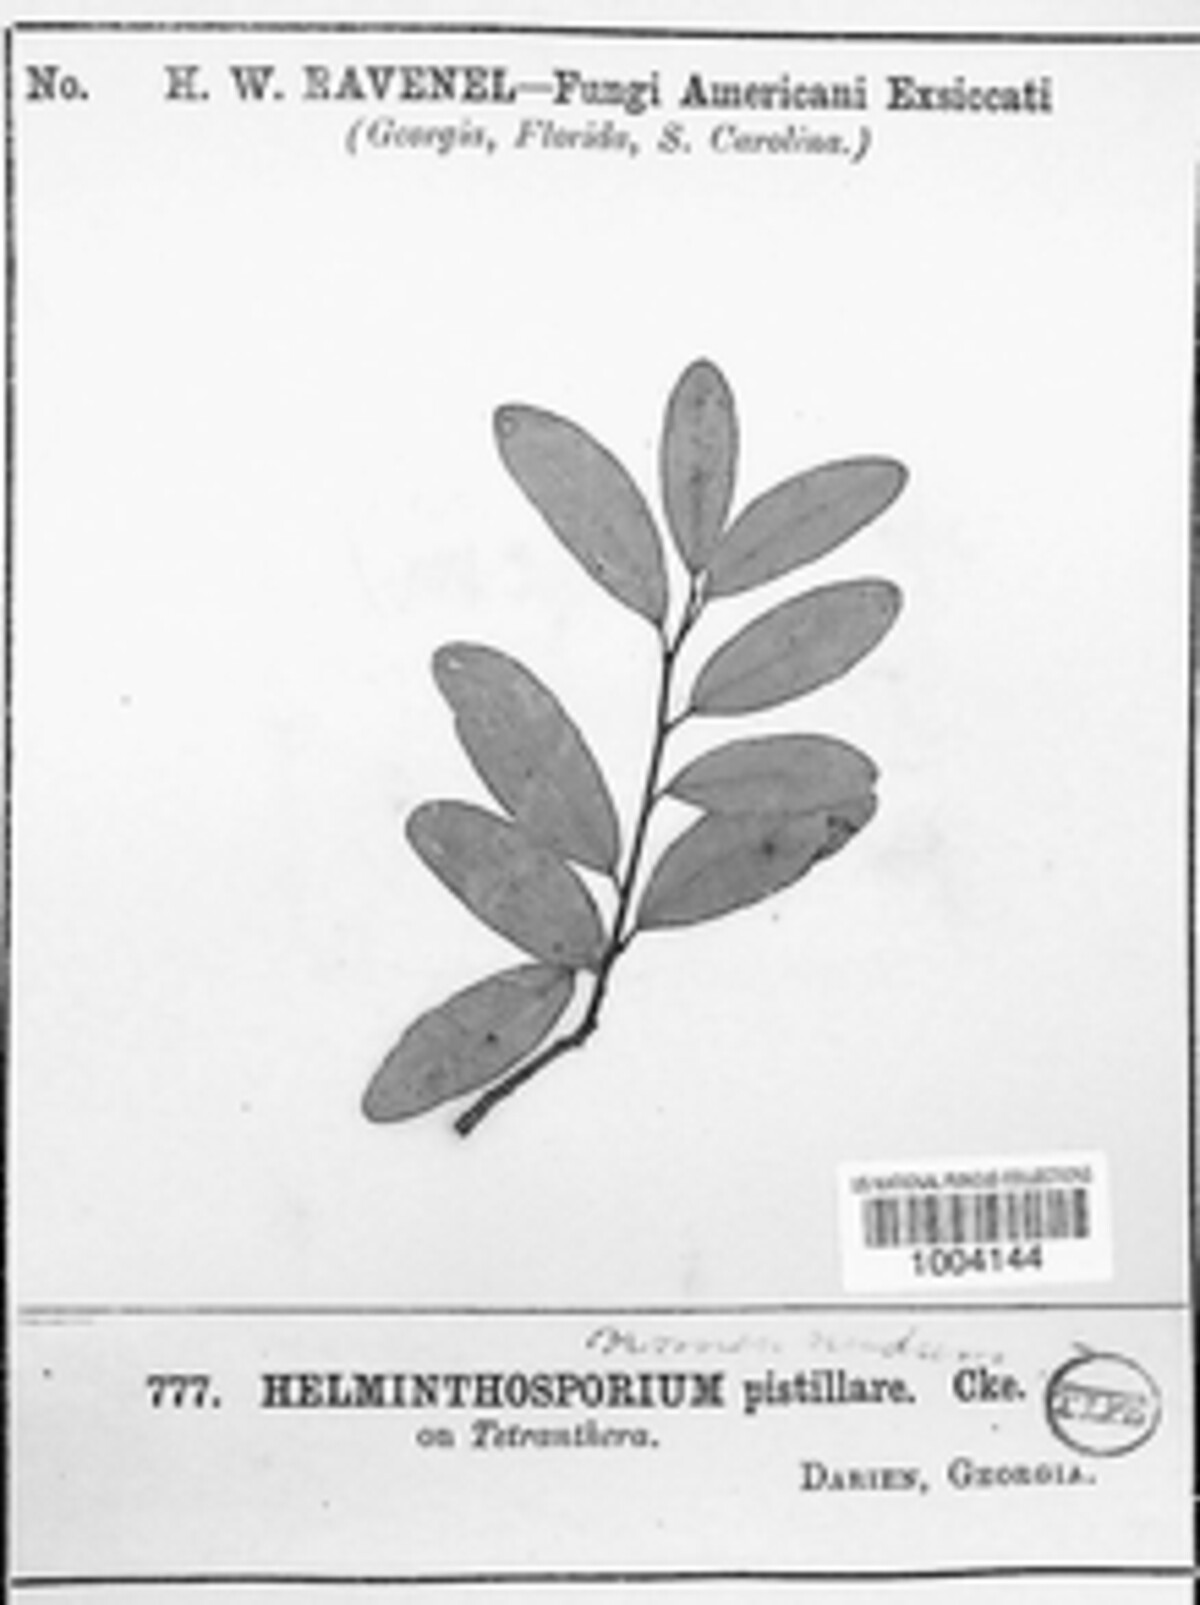 Helminthosporium pistillare image